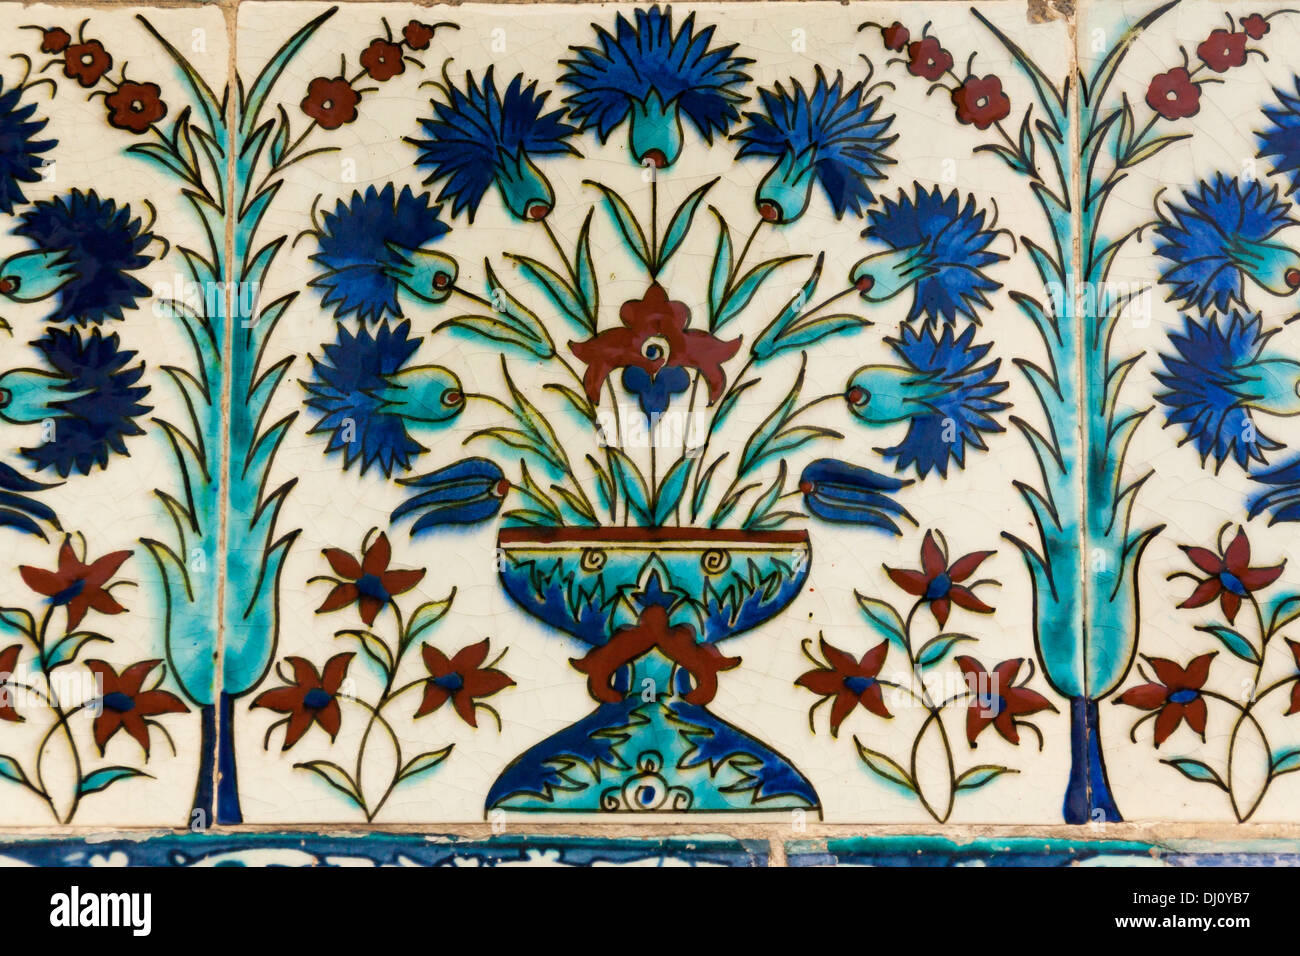 Les carreaux de céramique avec motif bleu sur fond blanc. Banque D'Images